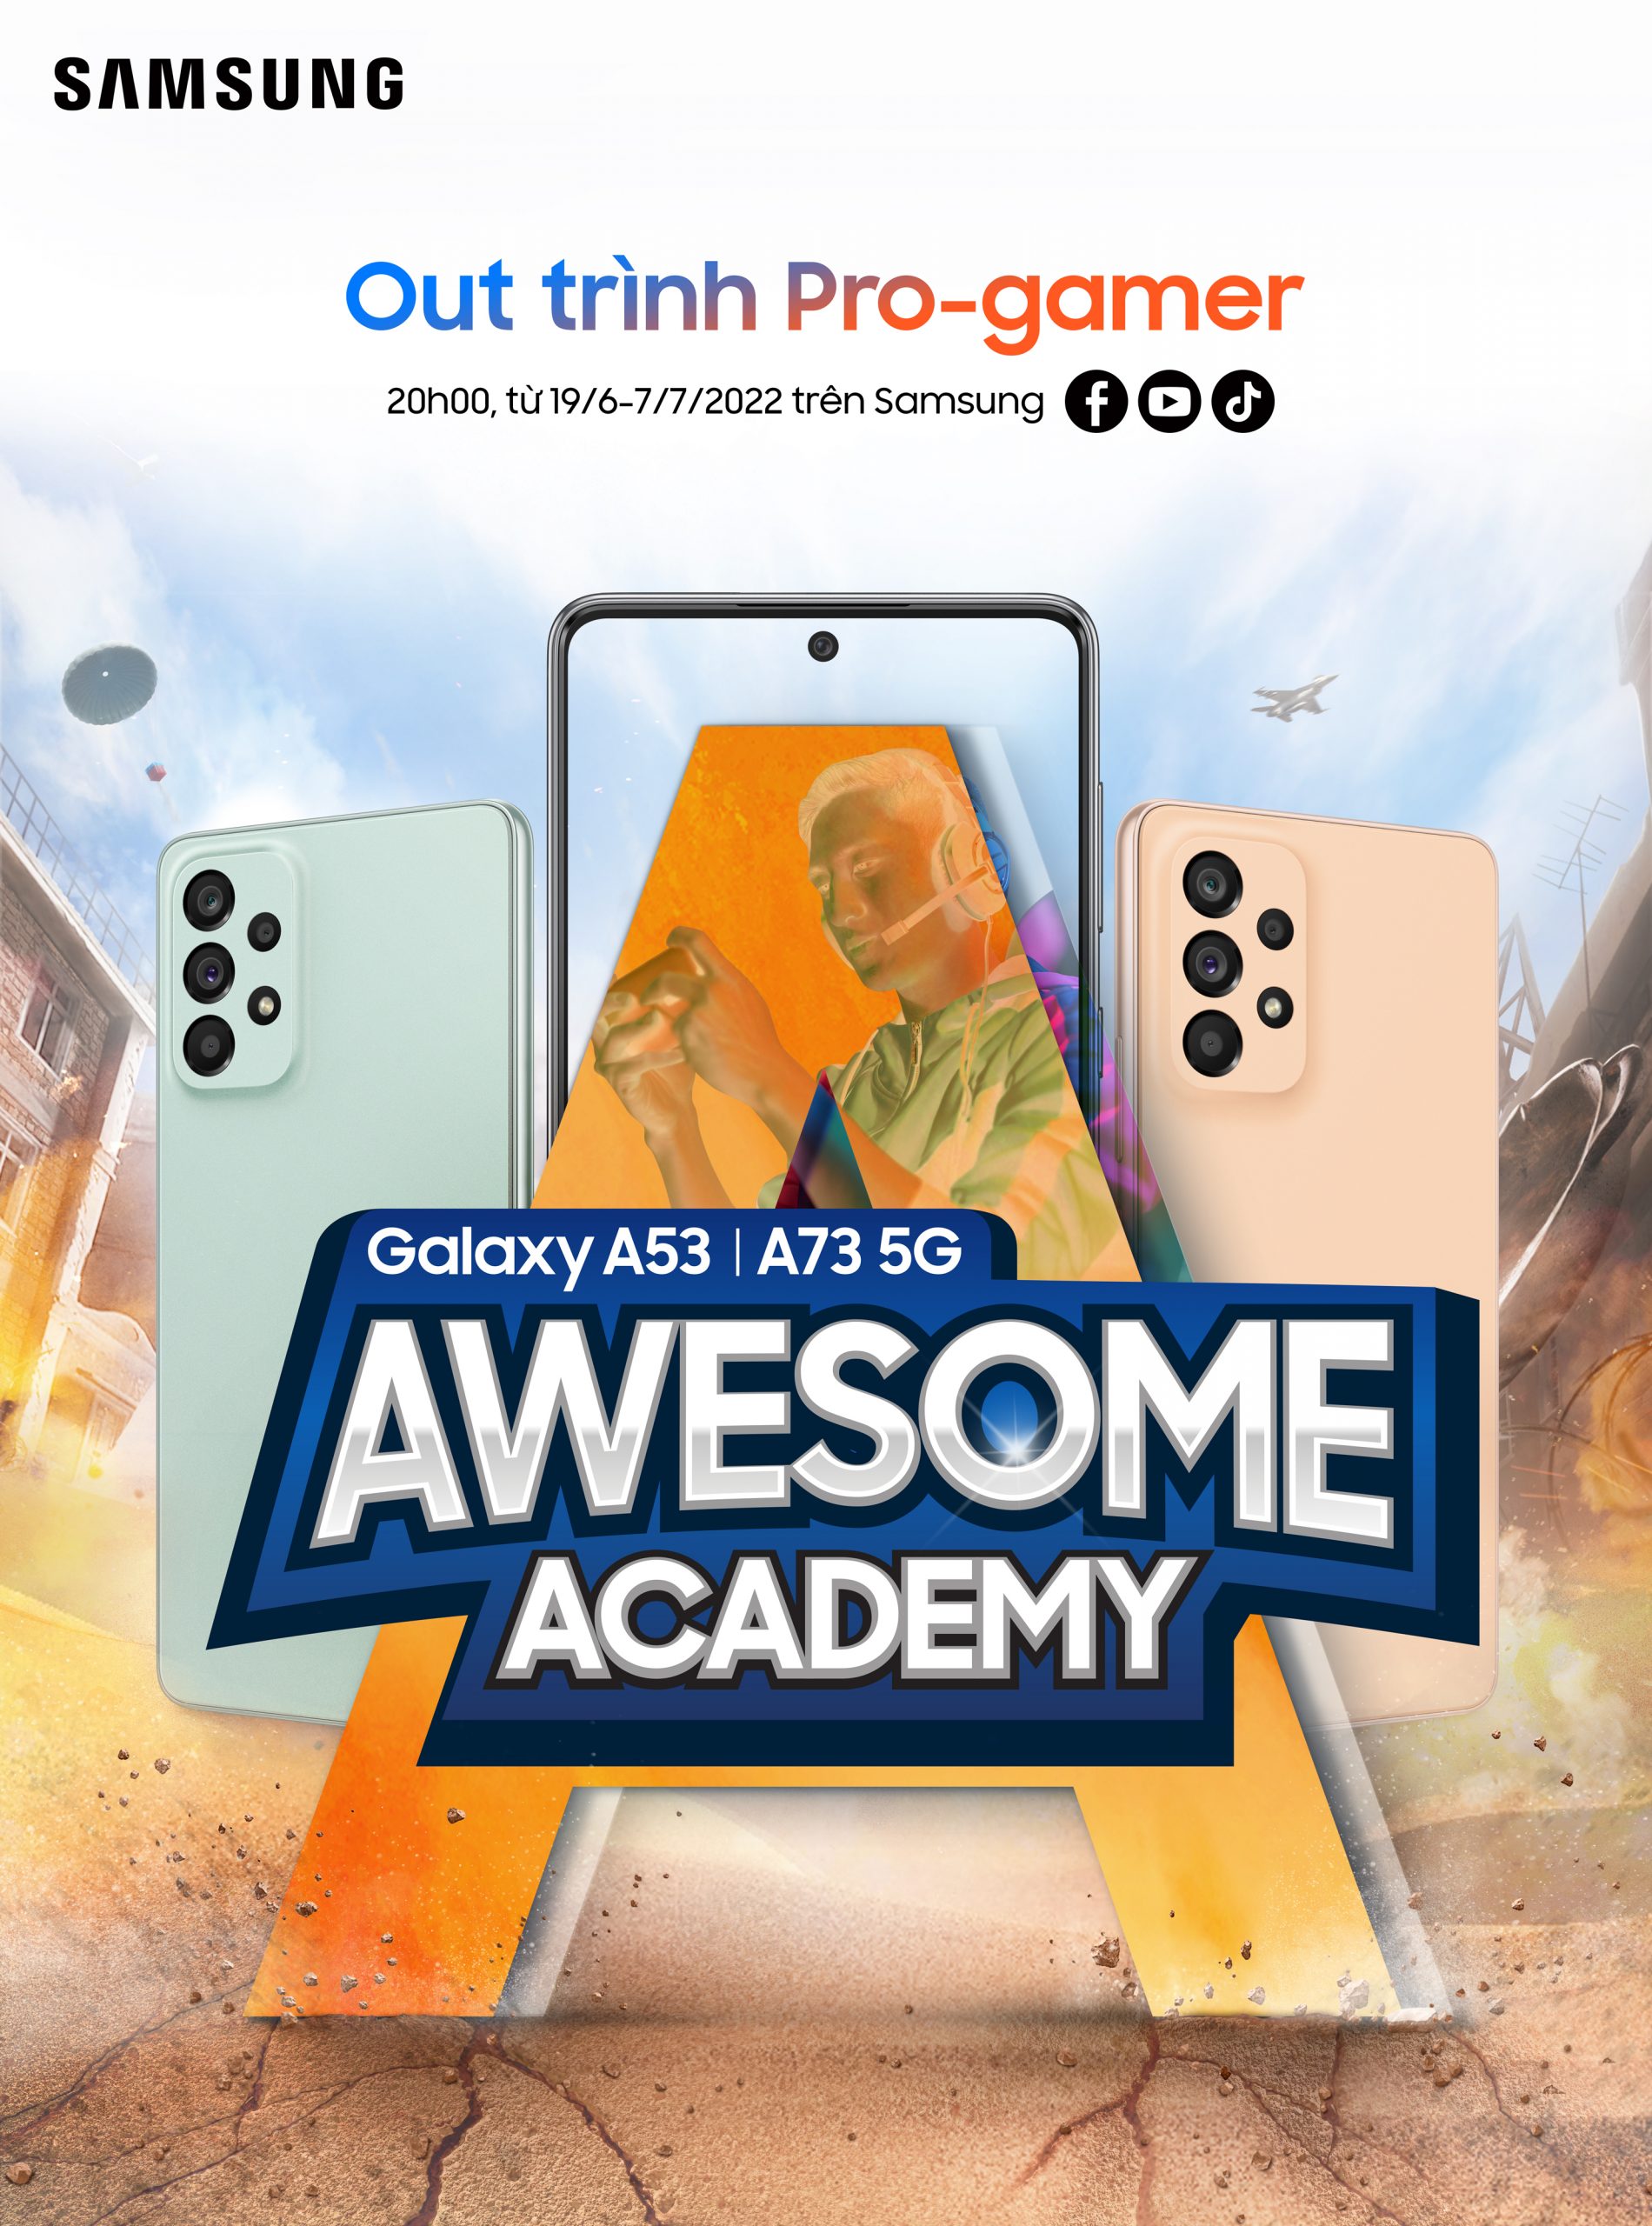 Trực tiếp Awesome Academy tập 4 của Samsung Galaxy A - Cris Devil Gamer lên sóng